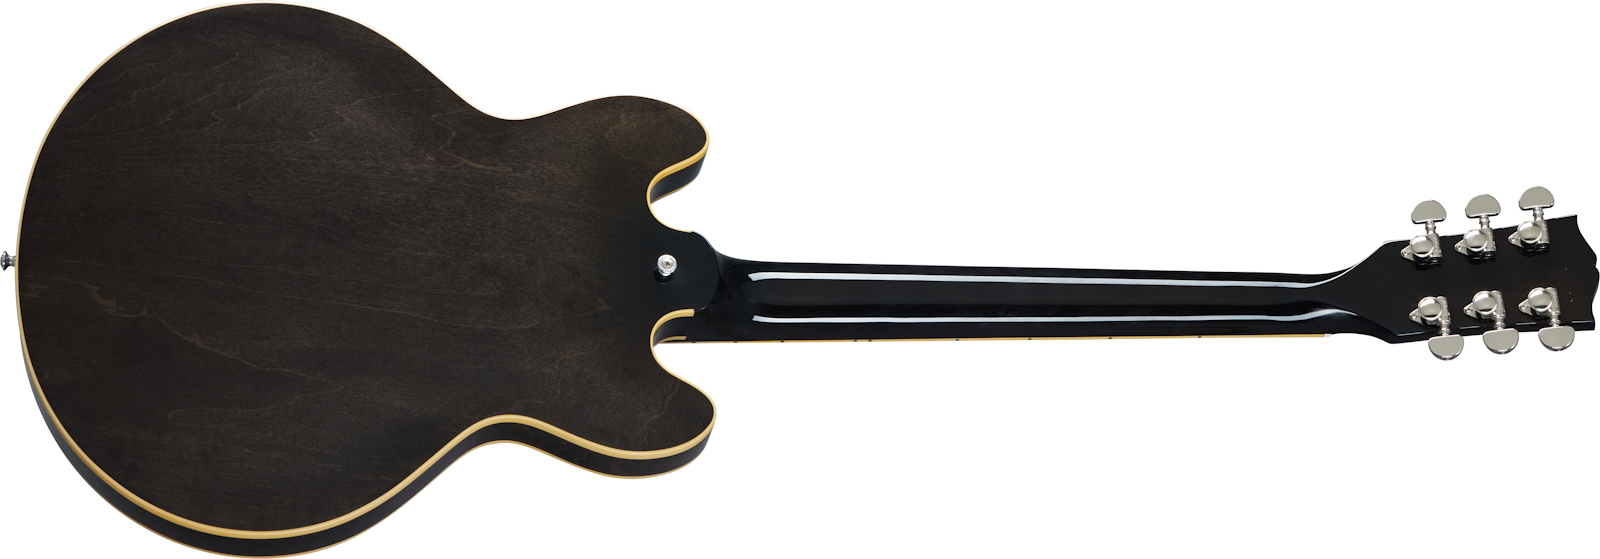 Gibson Es-339 Modern 2020 2h Ht Rw - Trans Ebony - Semi hollow elektriche gitaar - Variation 1